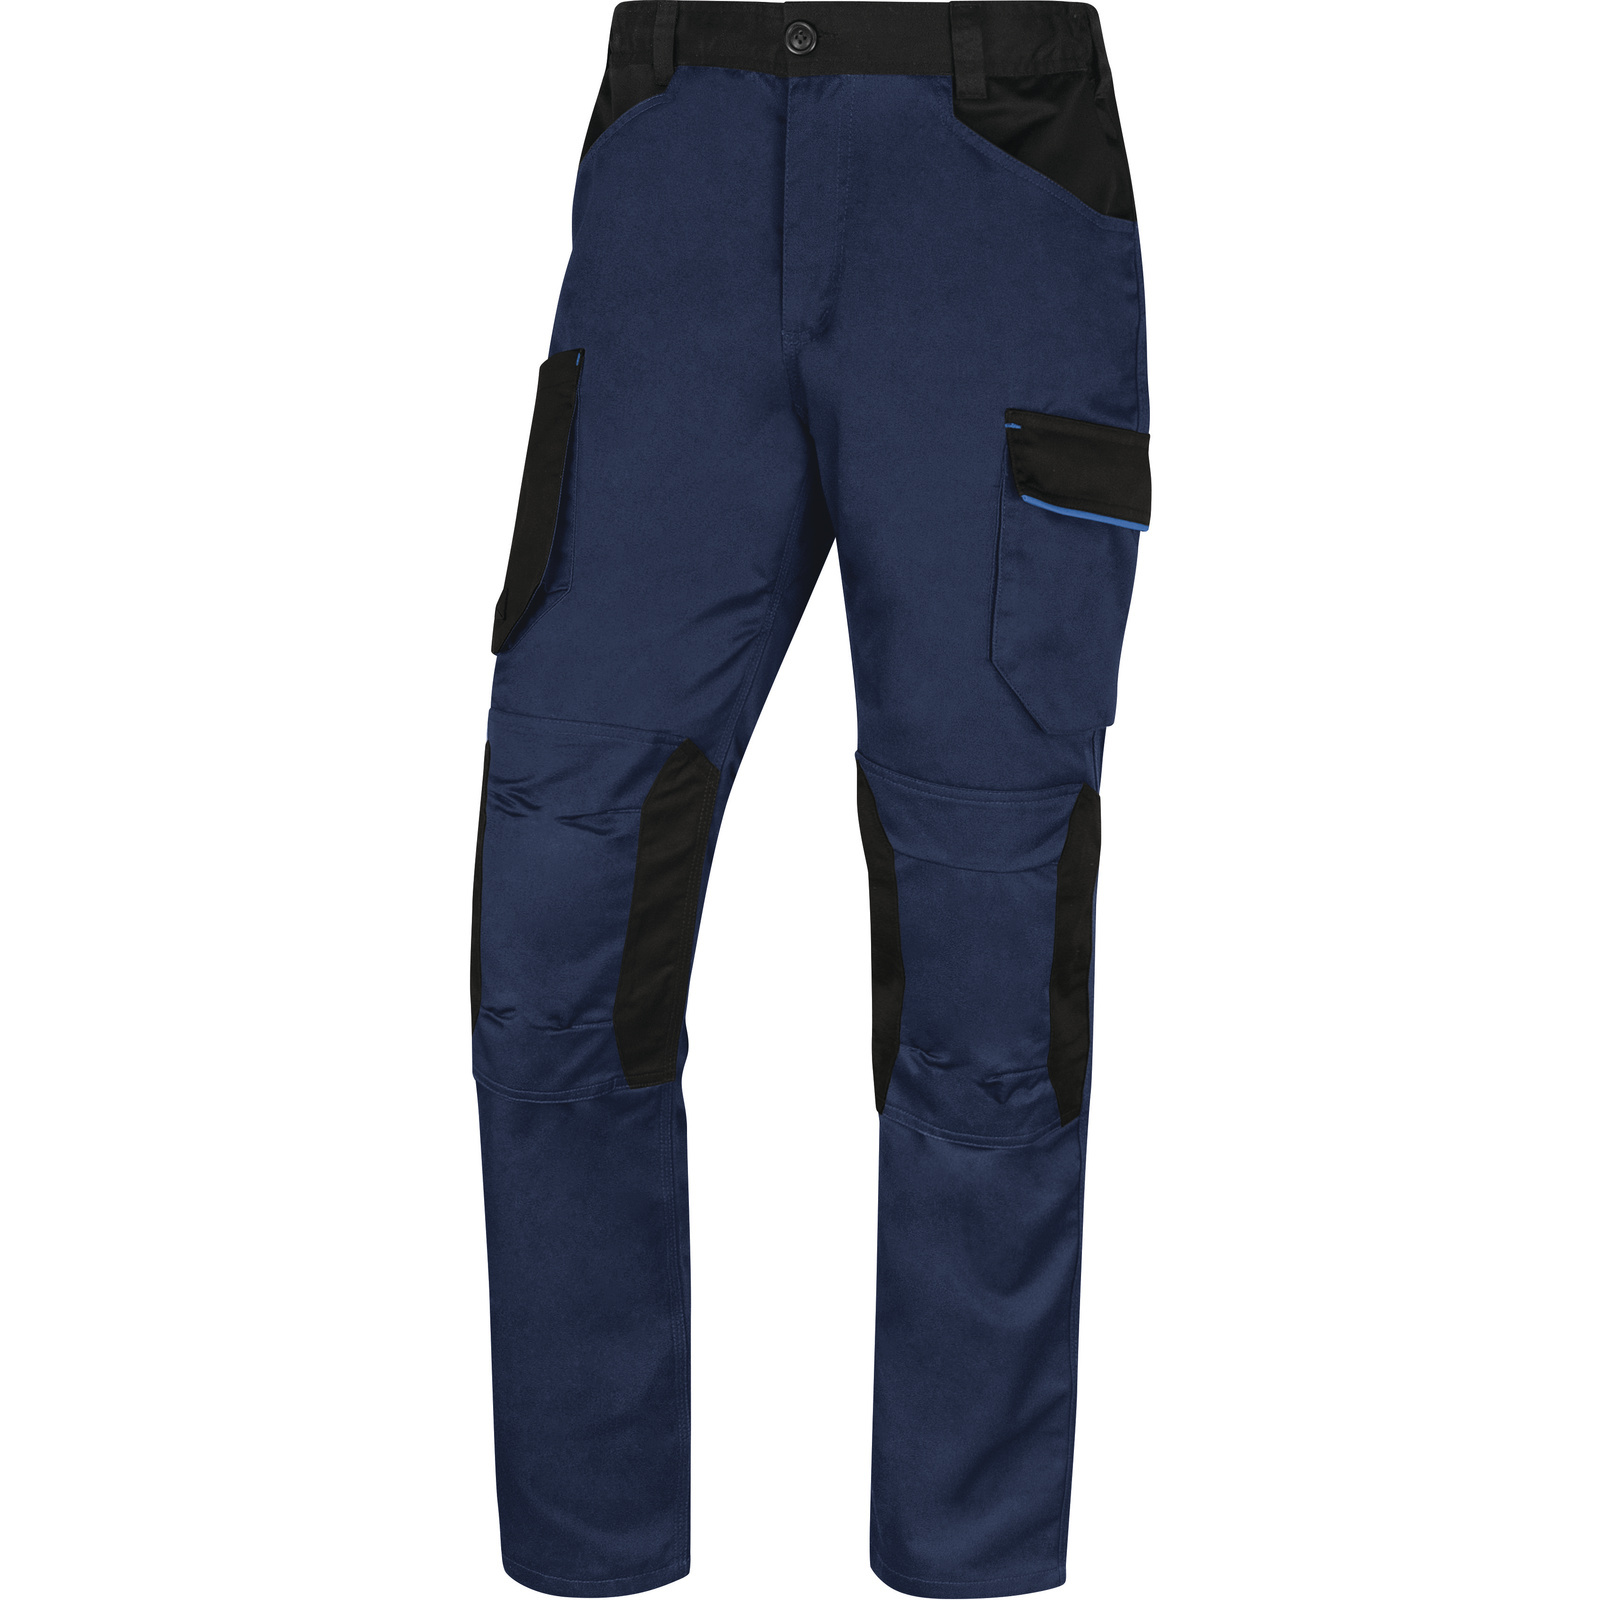 Pantalon de travail mach 2 bleu marine en polyester / coton - doublure flanelle DELTA PLUS - D020M2PW3BM0